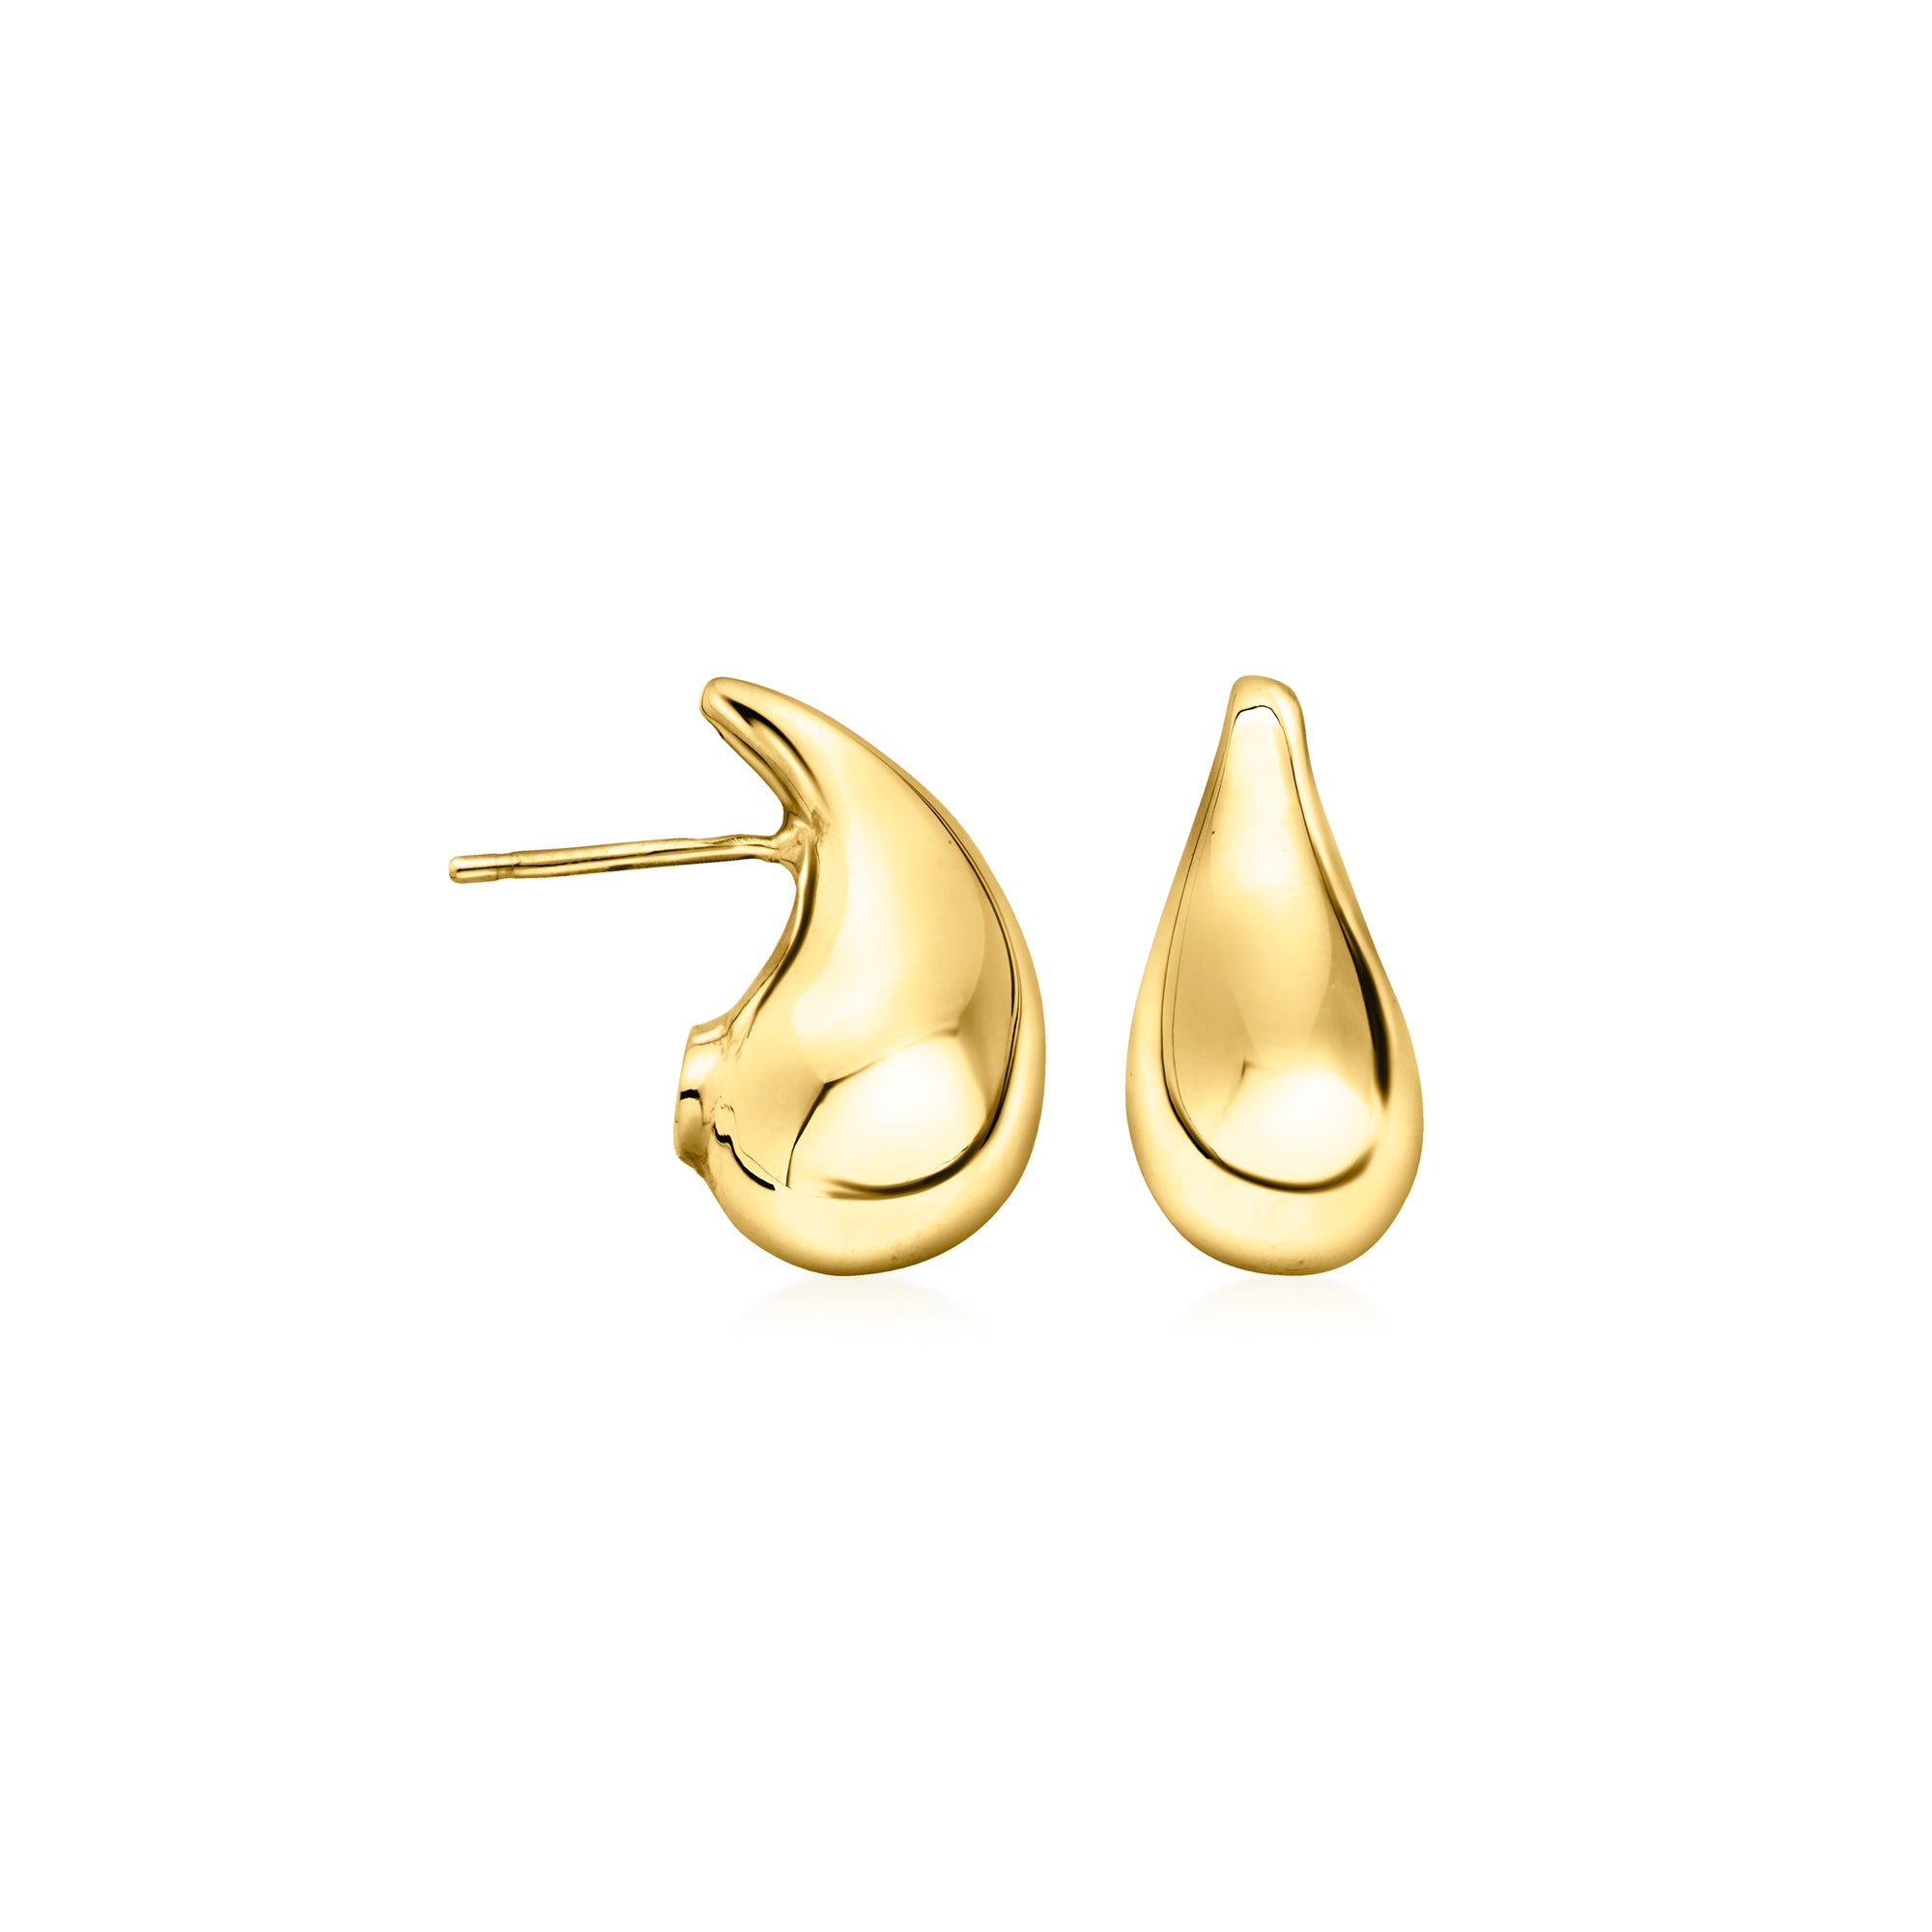 Ross-simons Italian 14kt Yellow Gold Teardrop Earrings